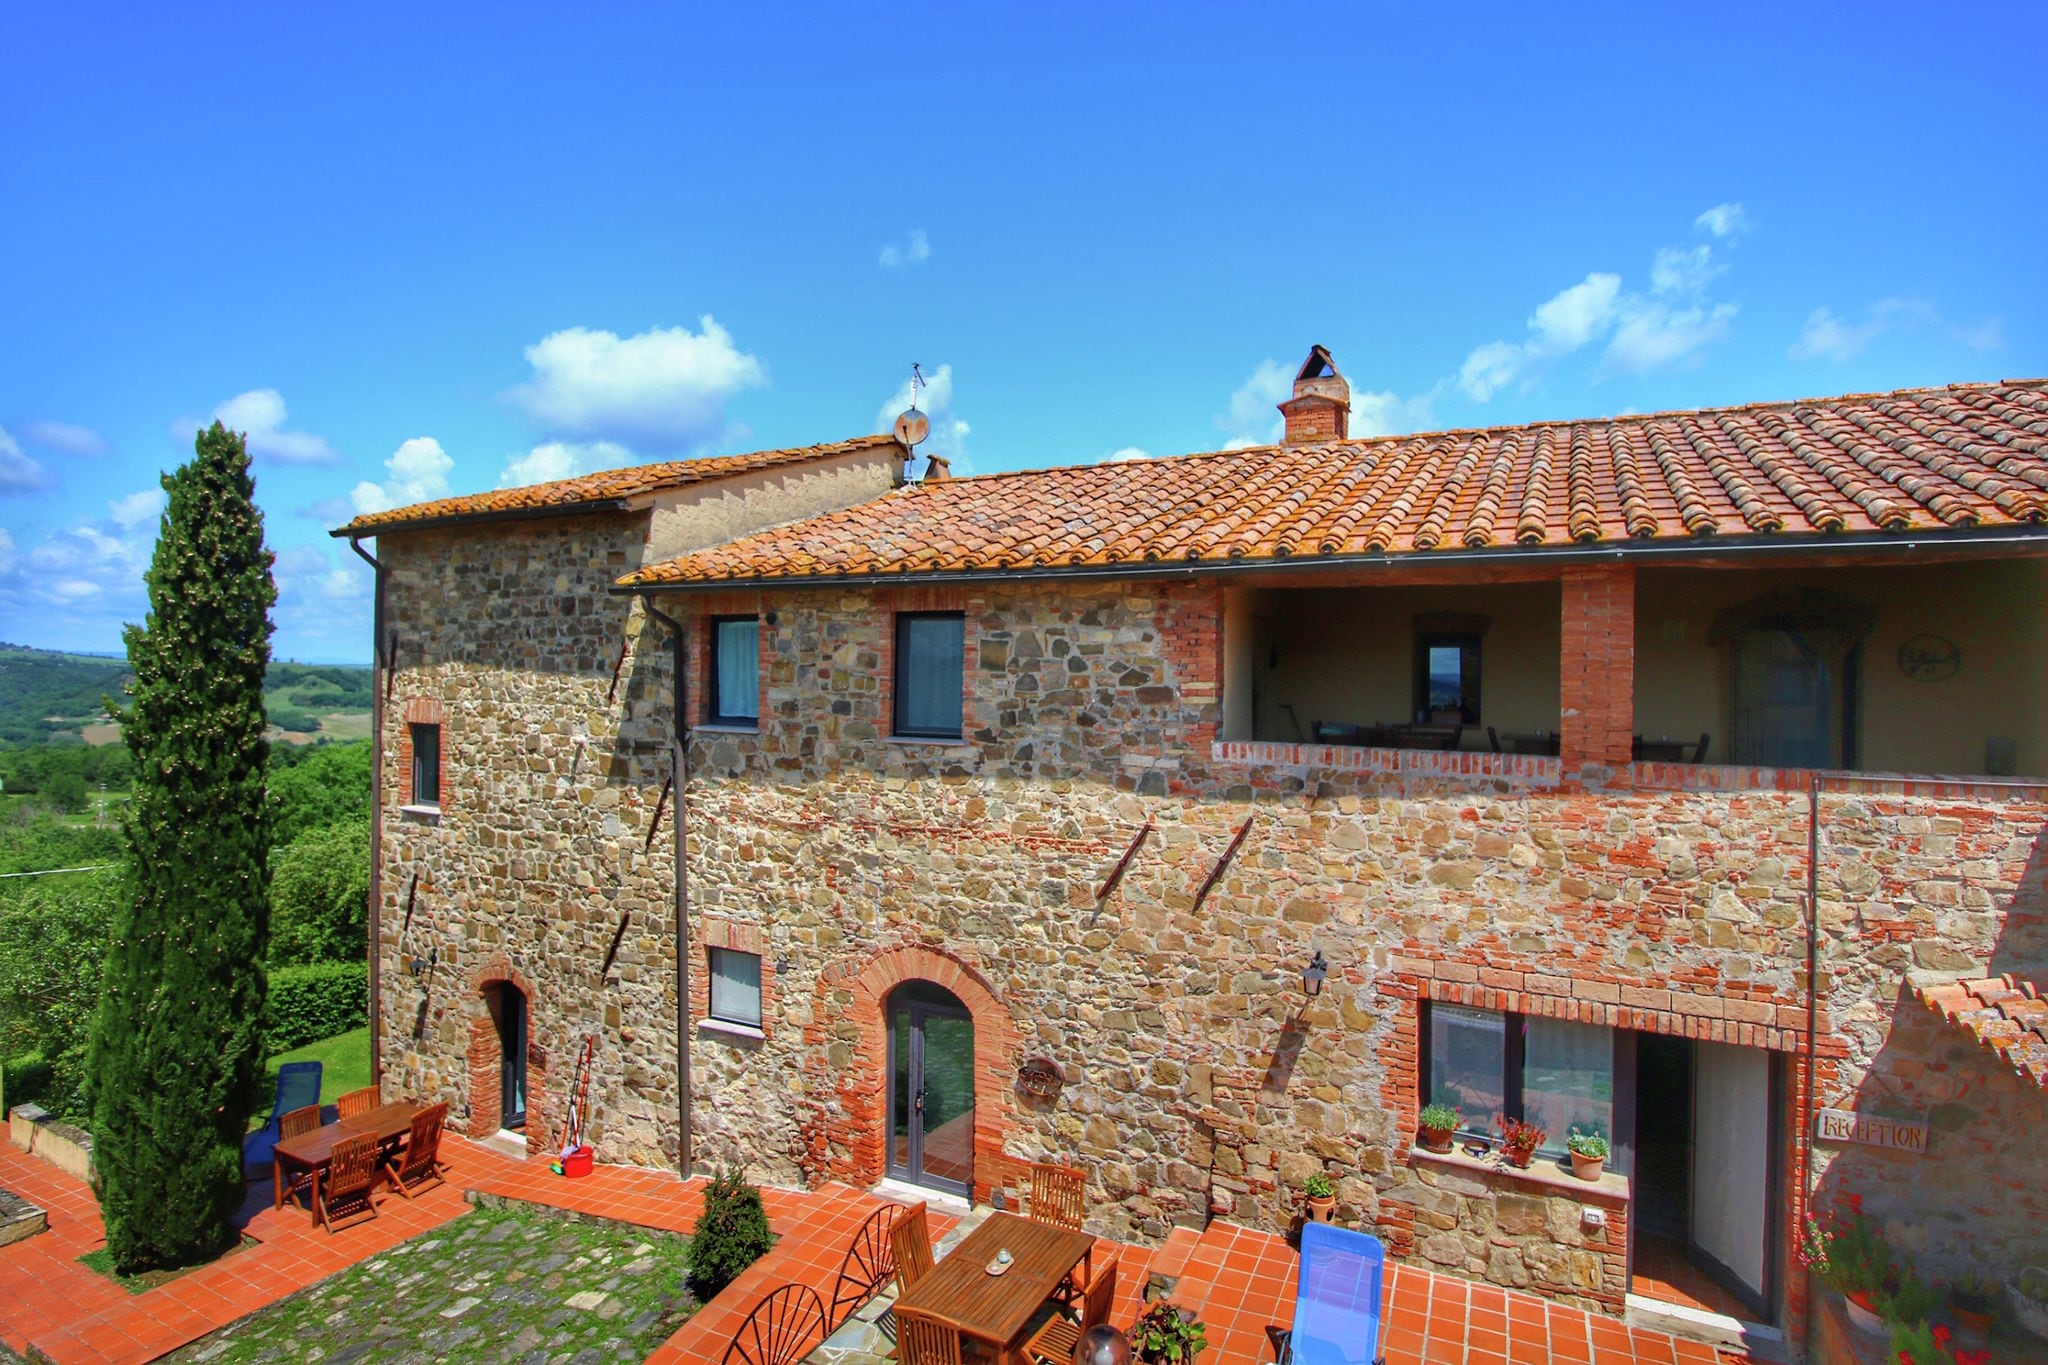 Fijne woning op landgoed bij Siena met schitterend uitzicht